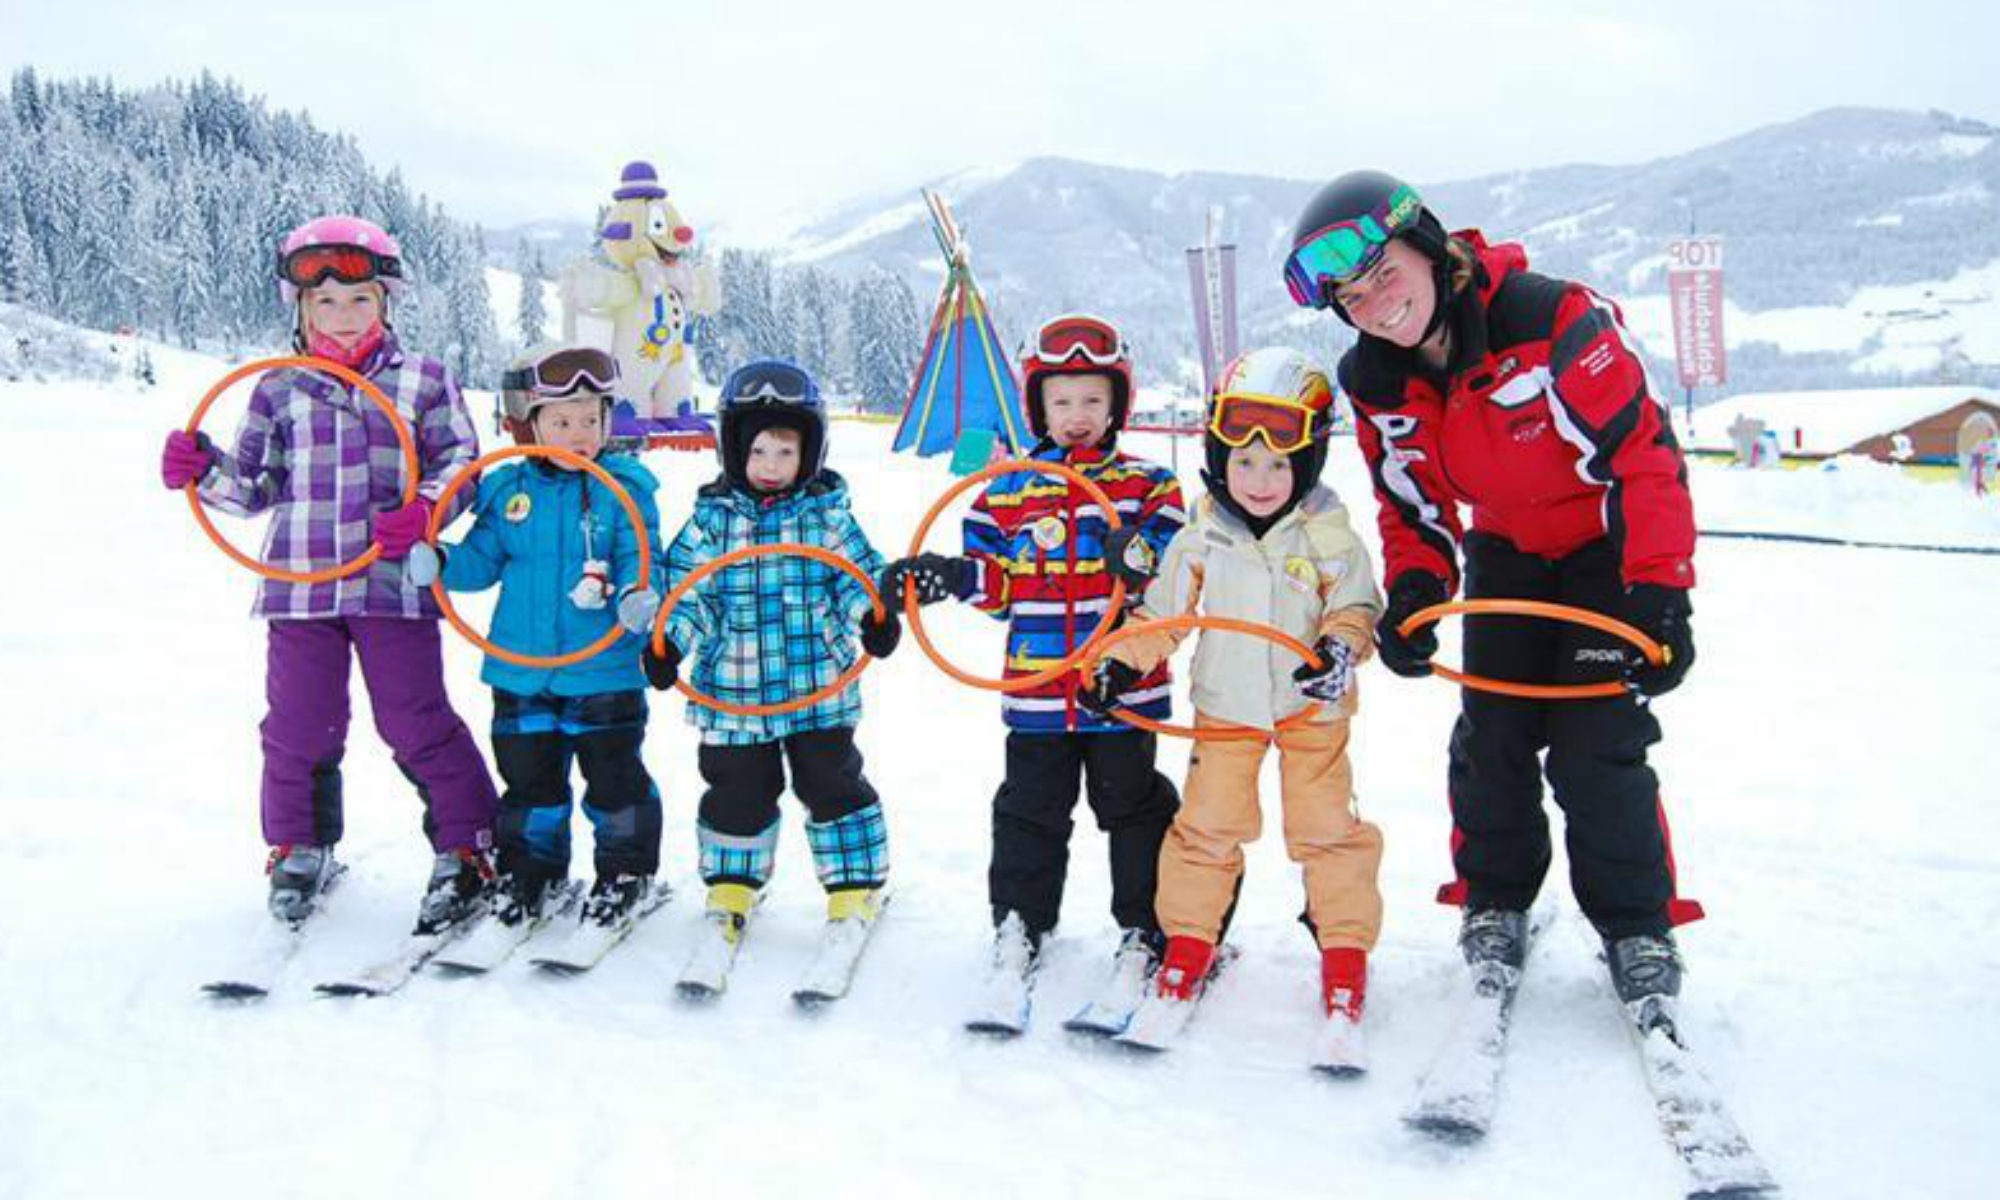 Een groep leerlingen poseert voor een foto met hun skilerares tijdens hun wintersport in Tirol.